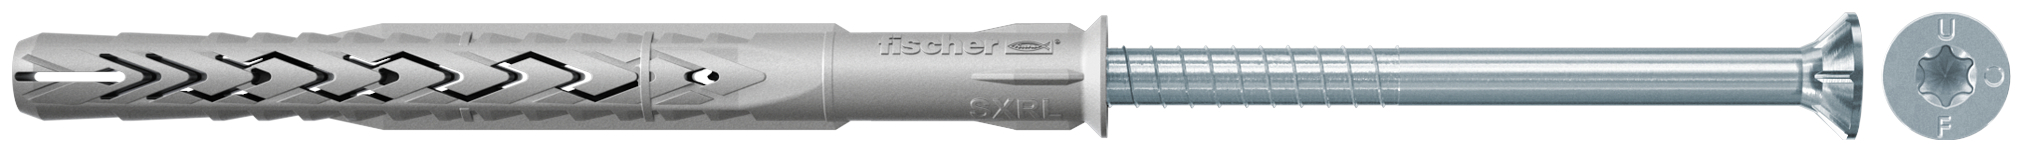 fischer Tasselli prolungati SXRL 8x100 T (1 Pz.) Tassello prolungato in nylon con marcatura CE con vite premontata T.S.P. impronta torx.